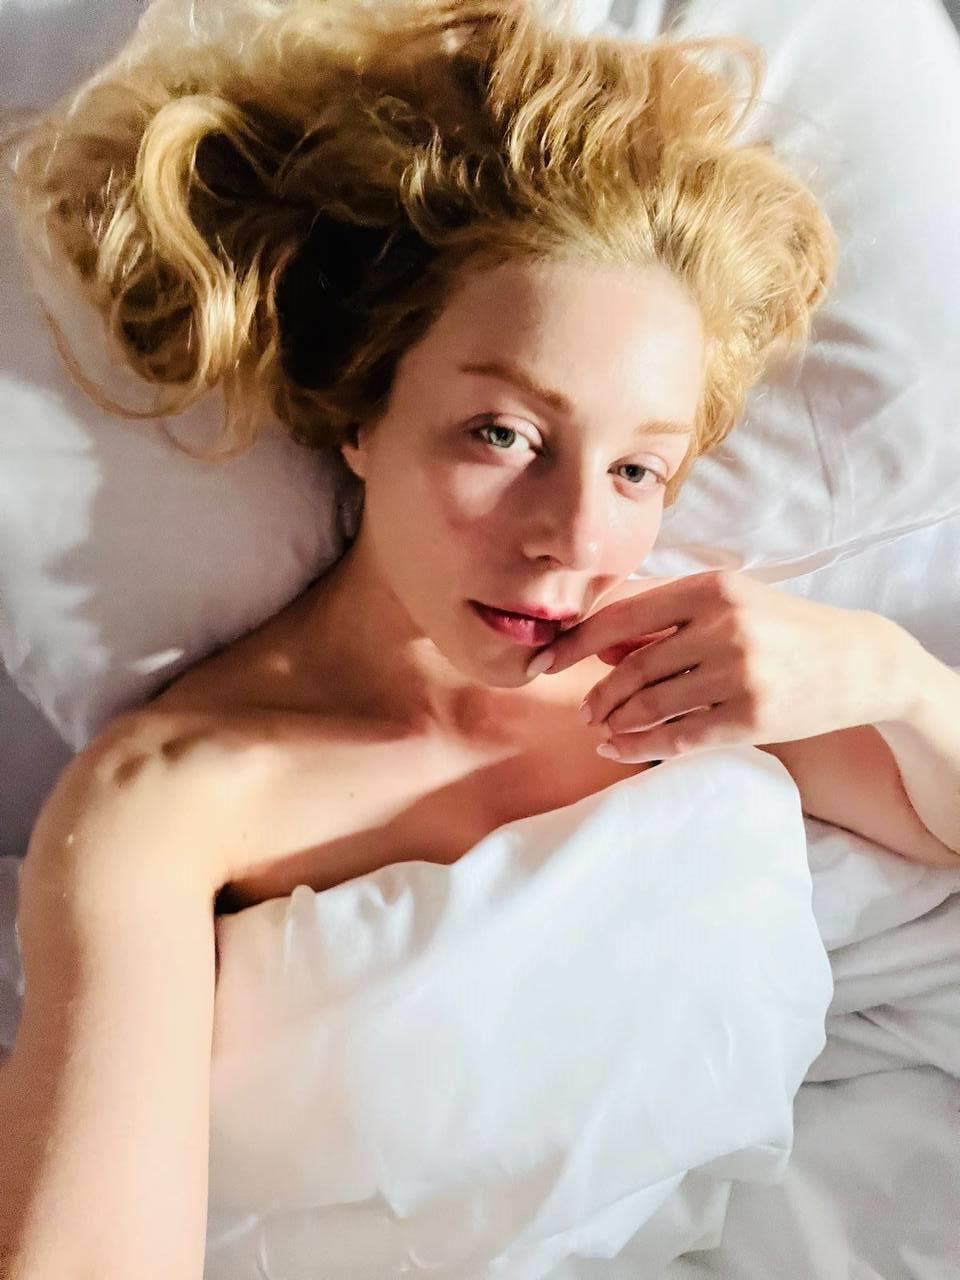 Тина Кароль сделала фото в постели: фанаты сравнили ее с молодой Монро